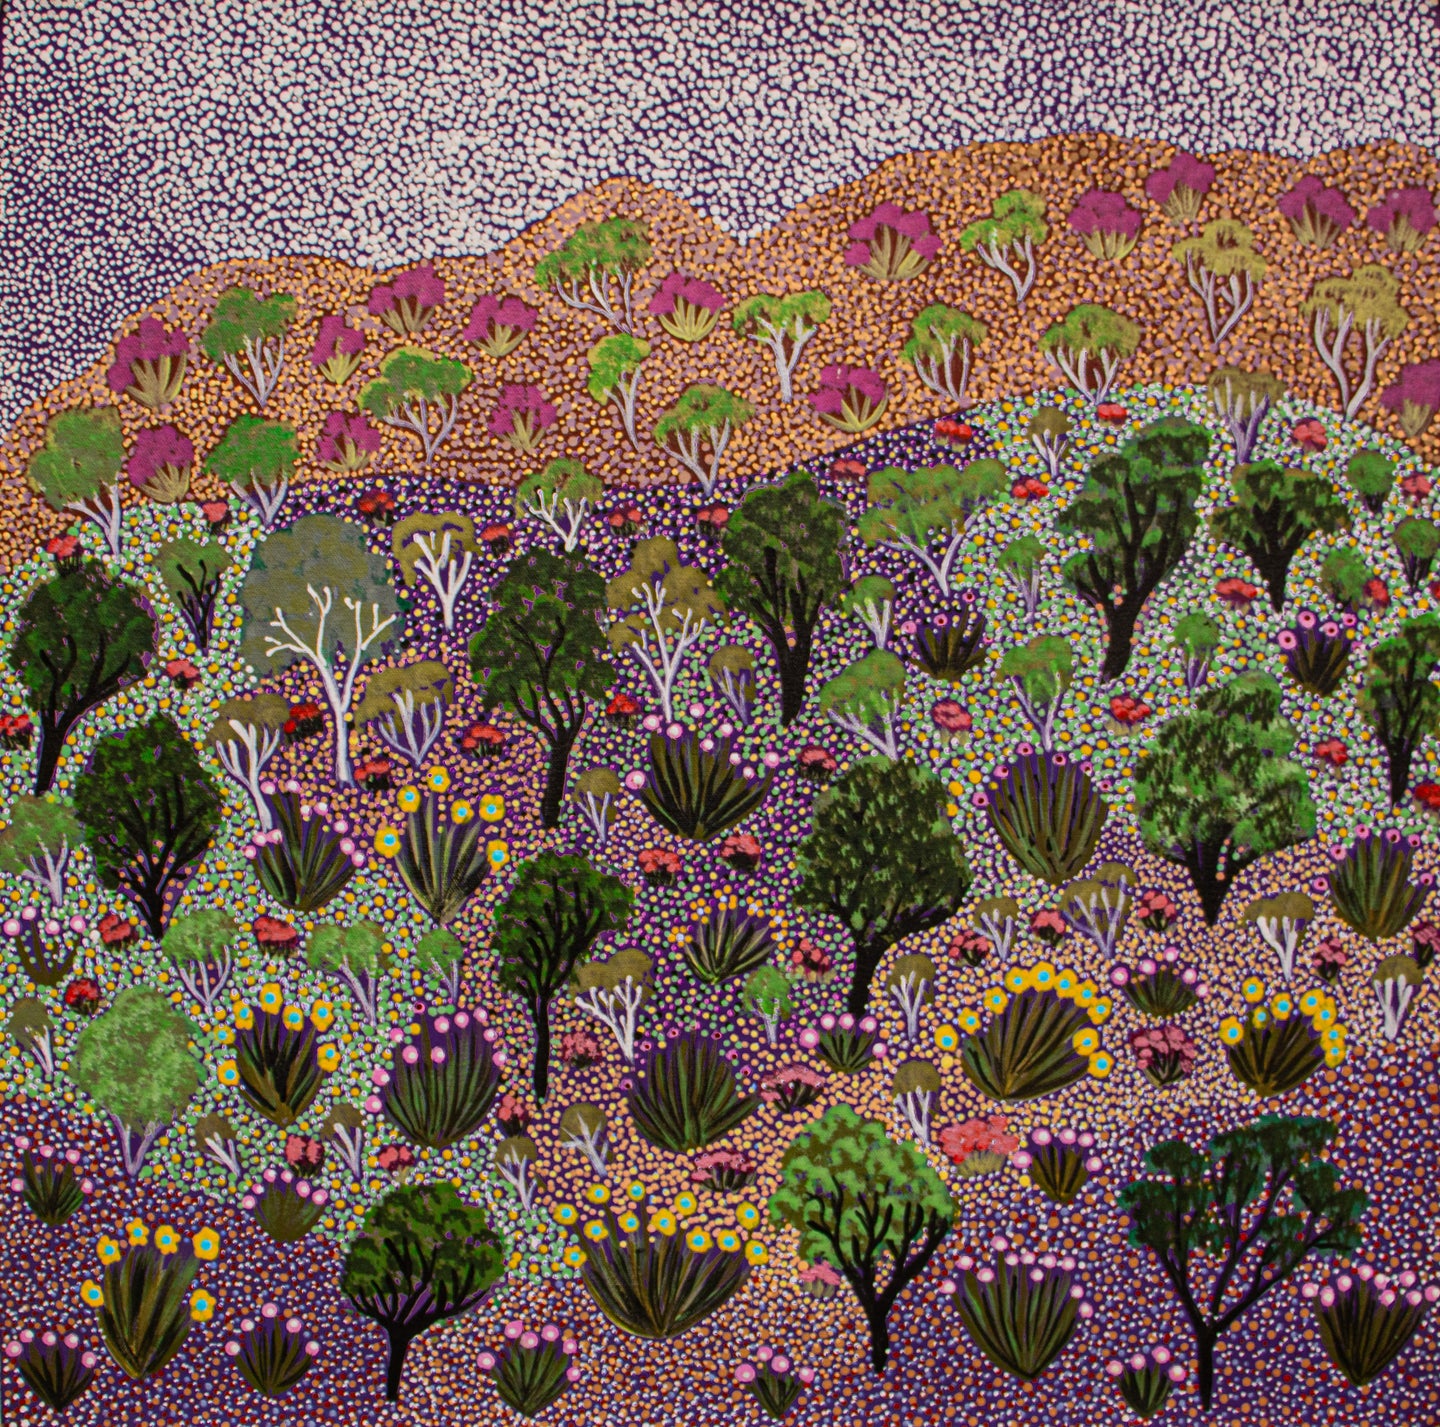 Wild Flower Landscape, 61x61cm